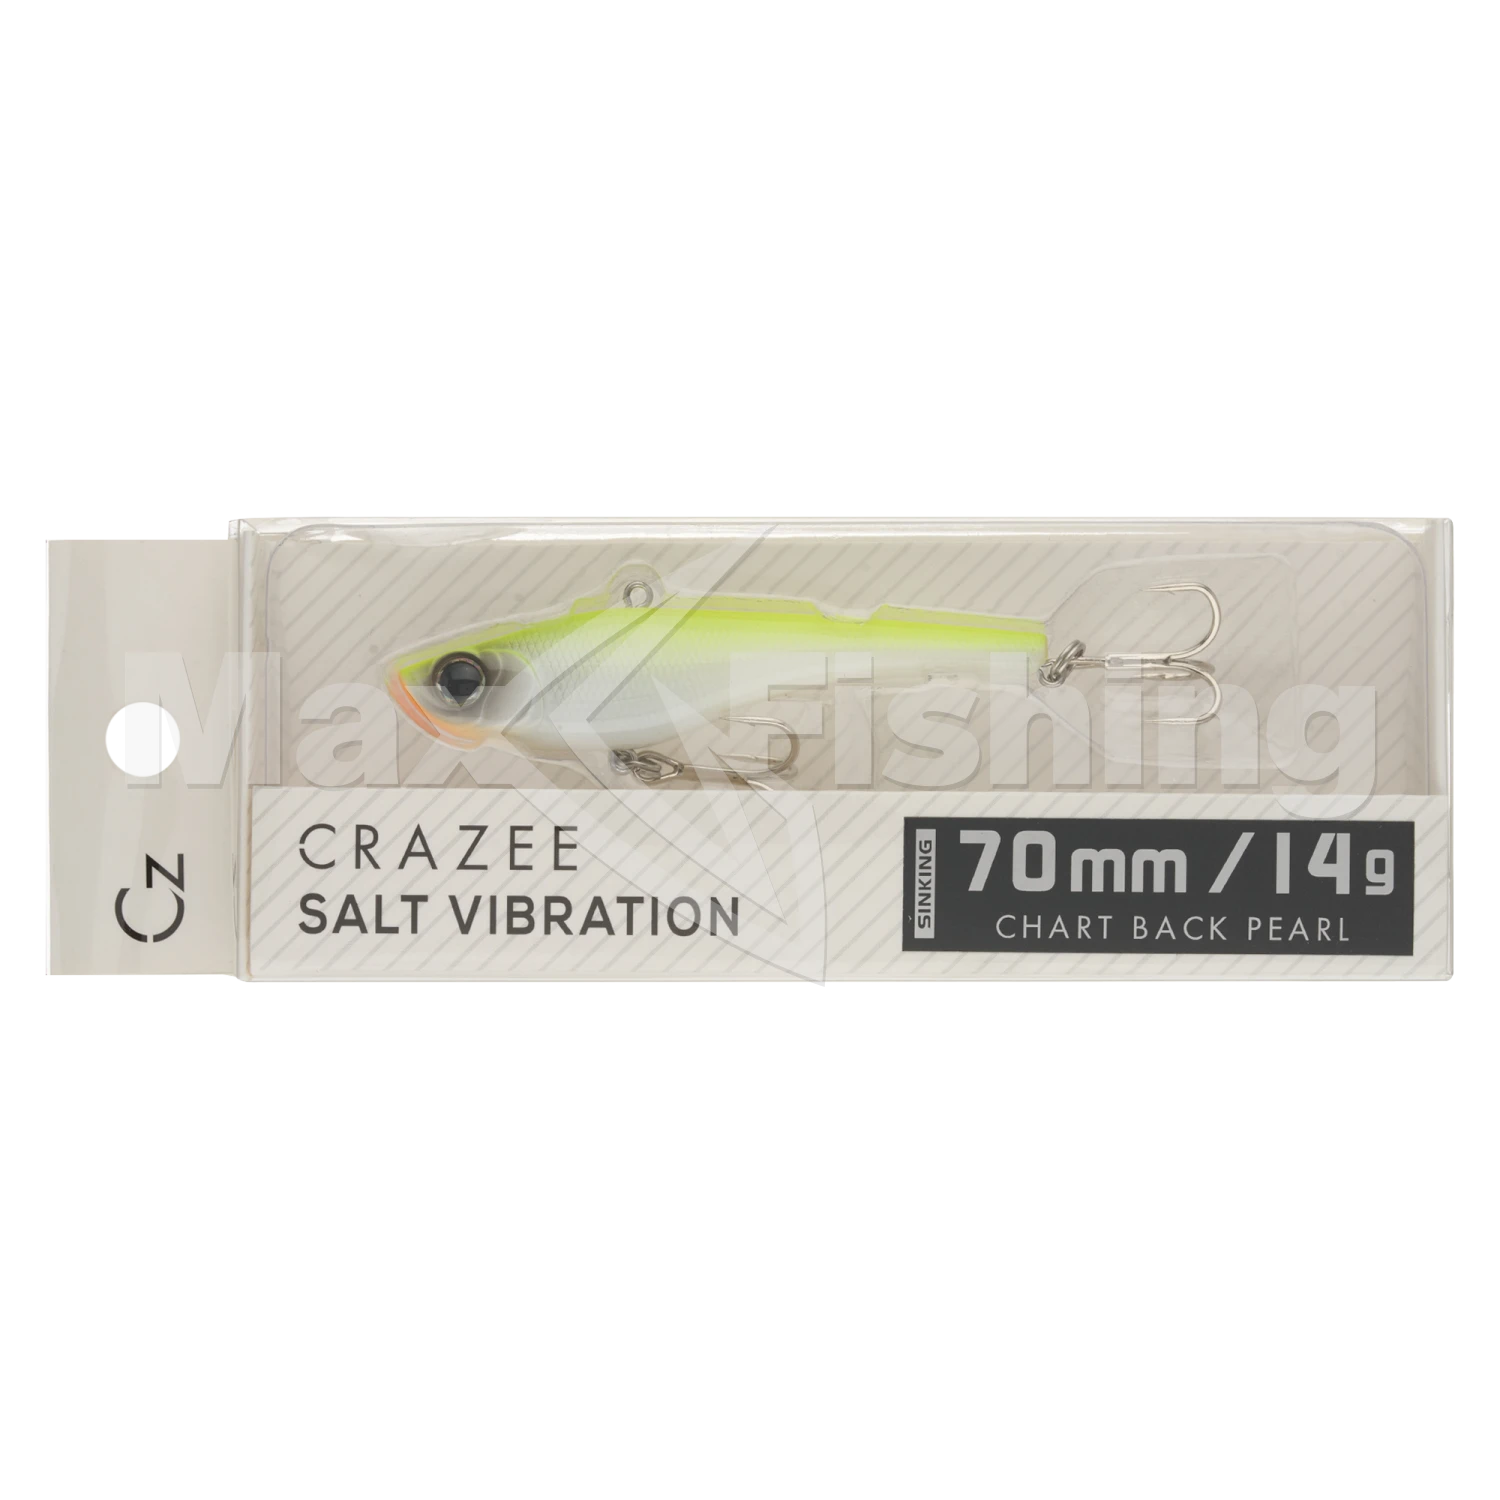 Виб Crazee Salt Vibration 70 #Chart Back Pearl